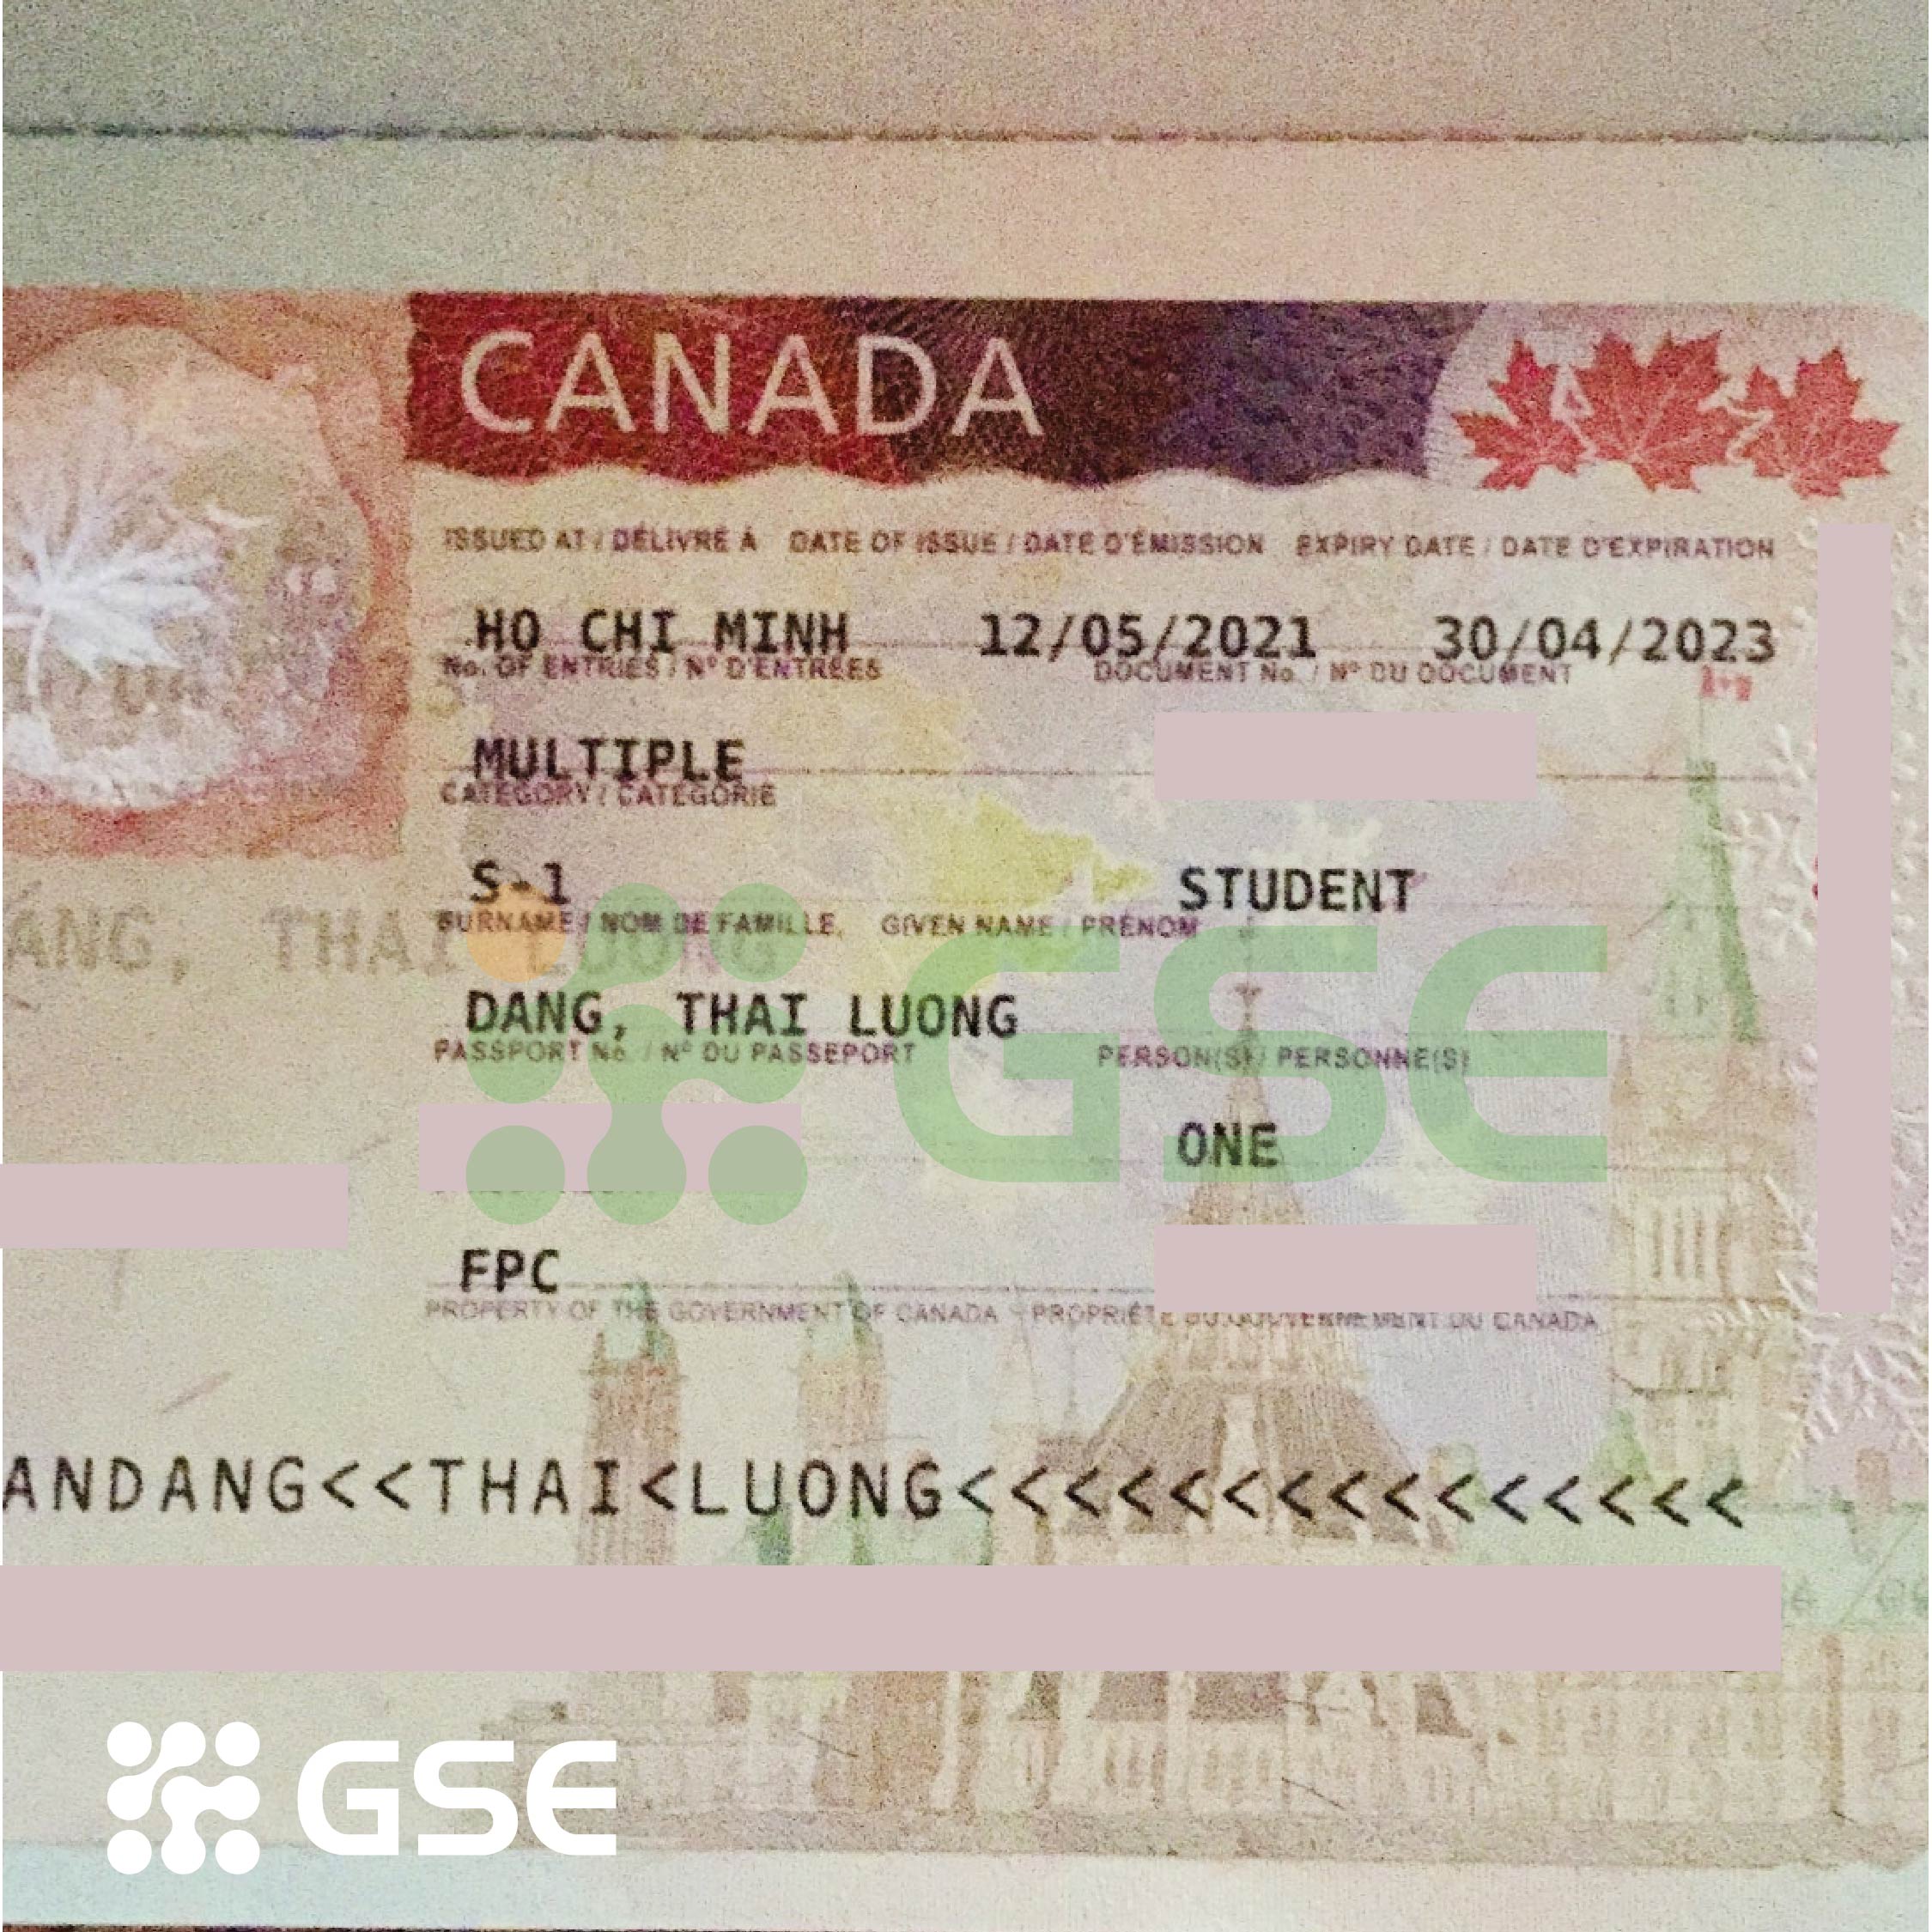 visa canada dang thai luong 01 - Visa du học Canada - Thái Lương